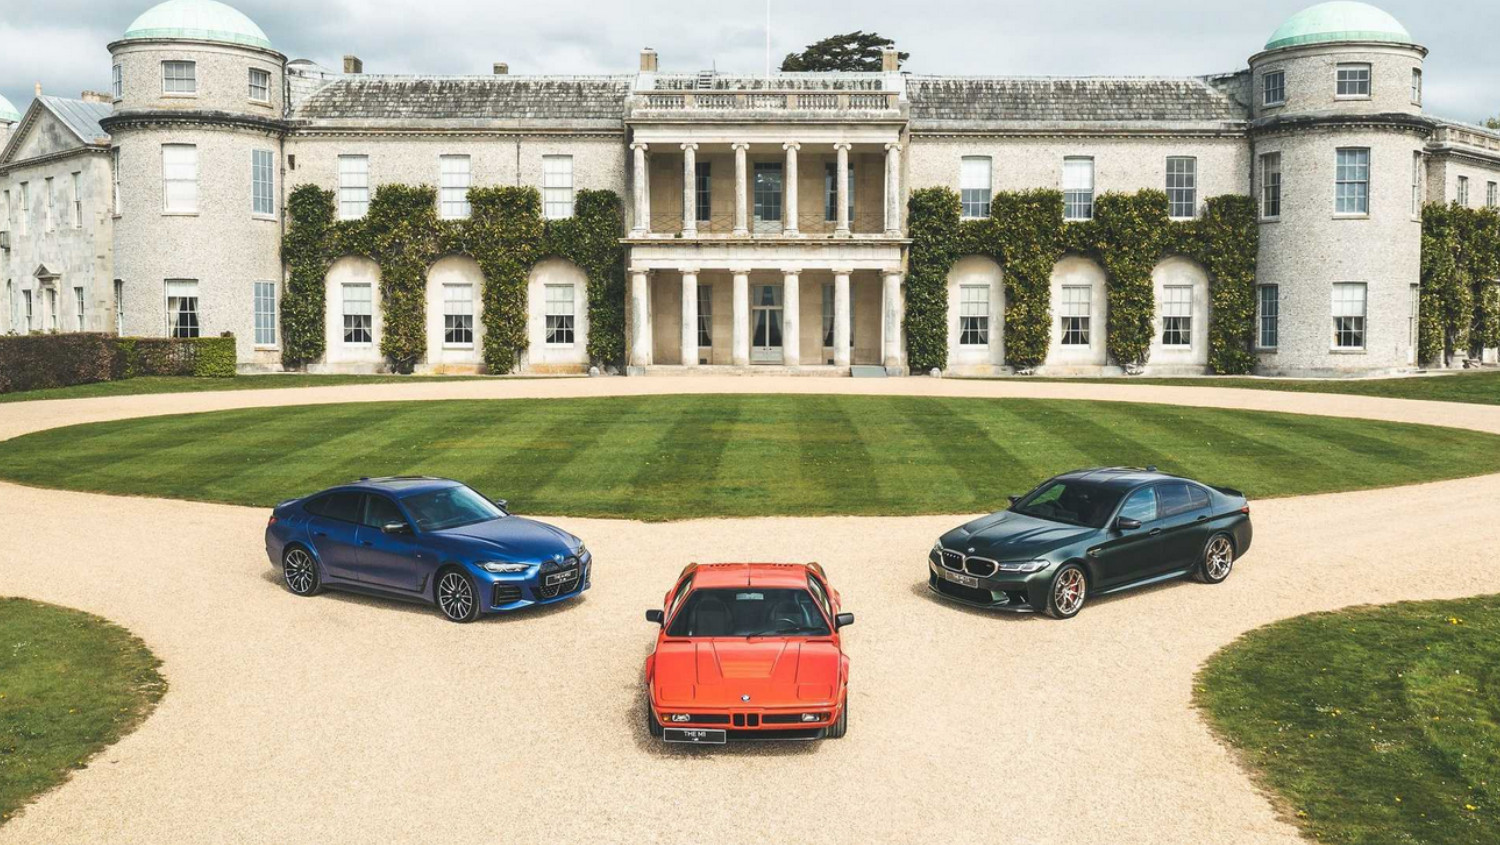 Serão vários os modelos históricos da BMW M a marcar presença em Goodwood. Mas não só...